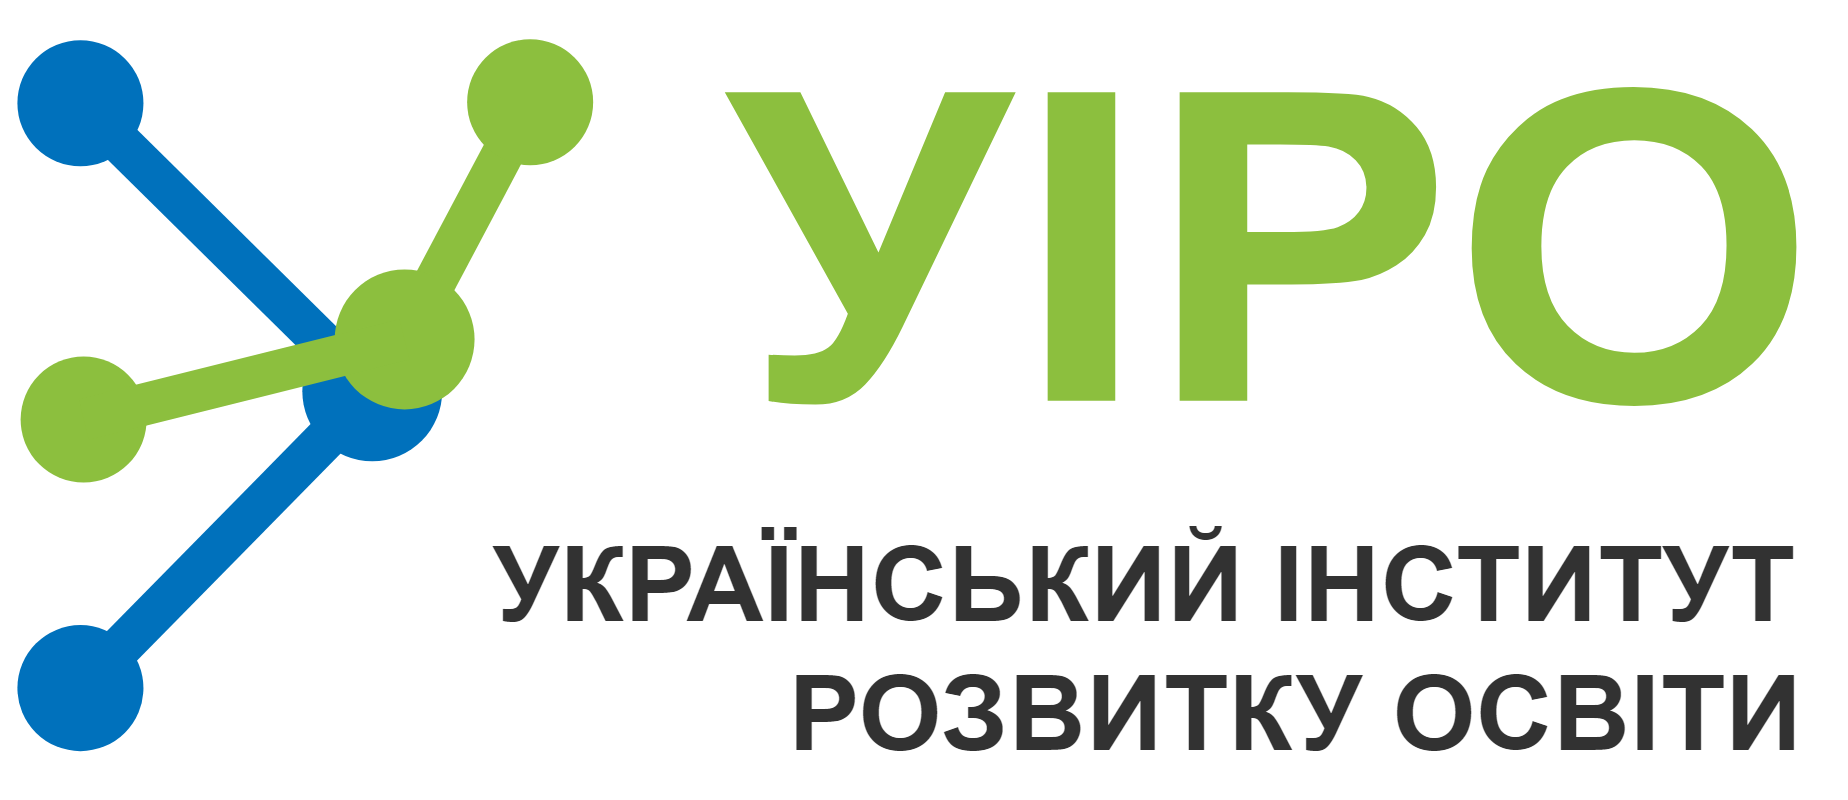 Державна установа «Український інститут розвитку освіти»